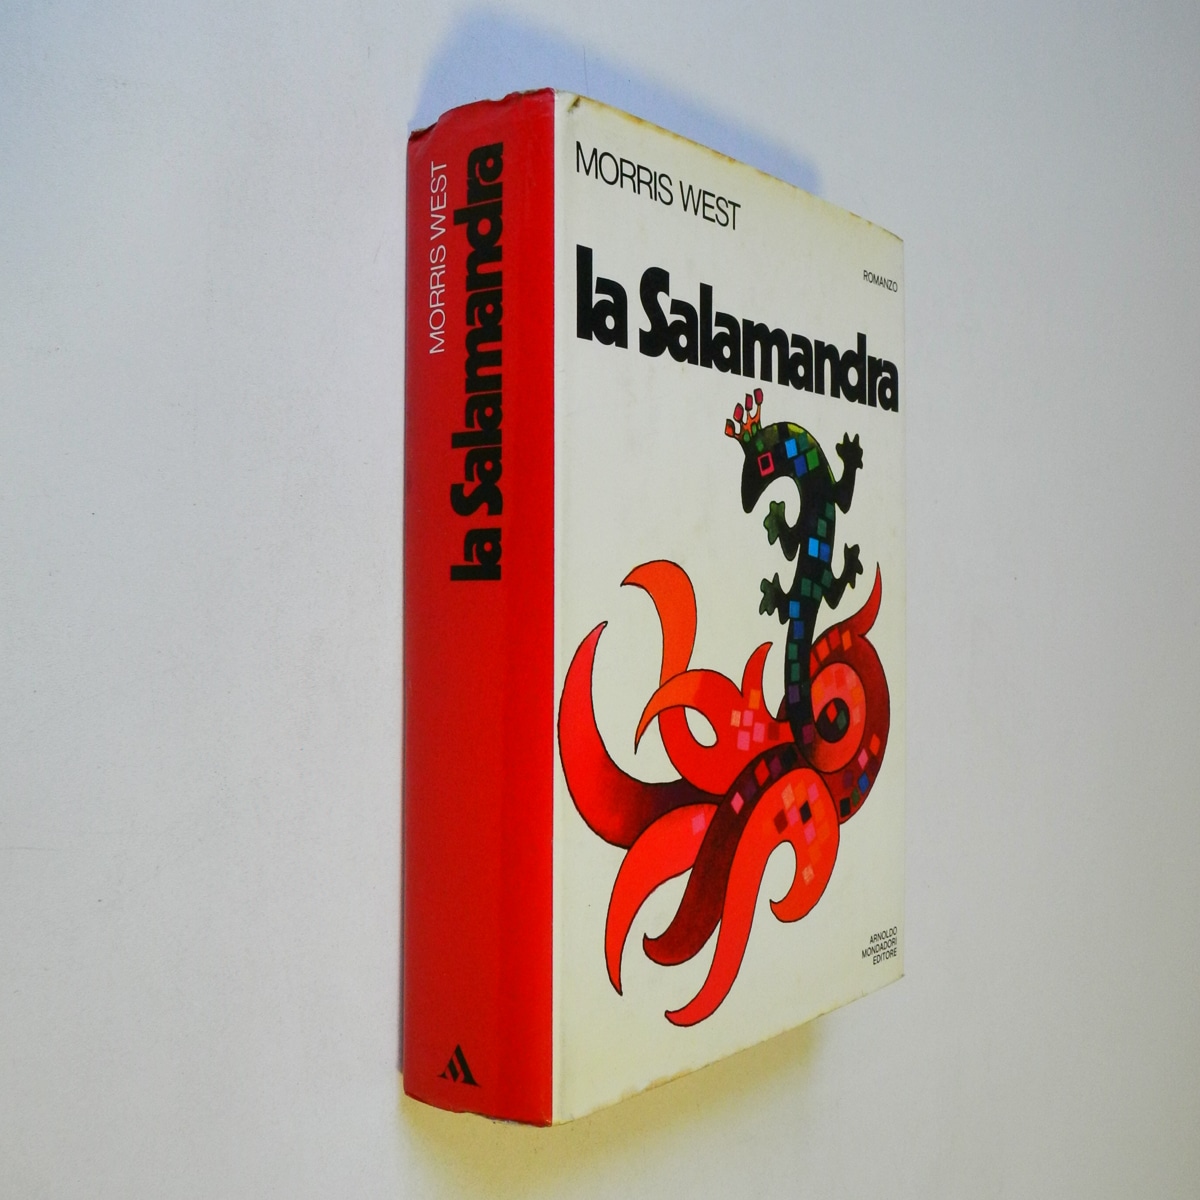 Morris West – La Salamandra Mondadori